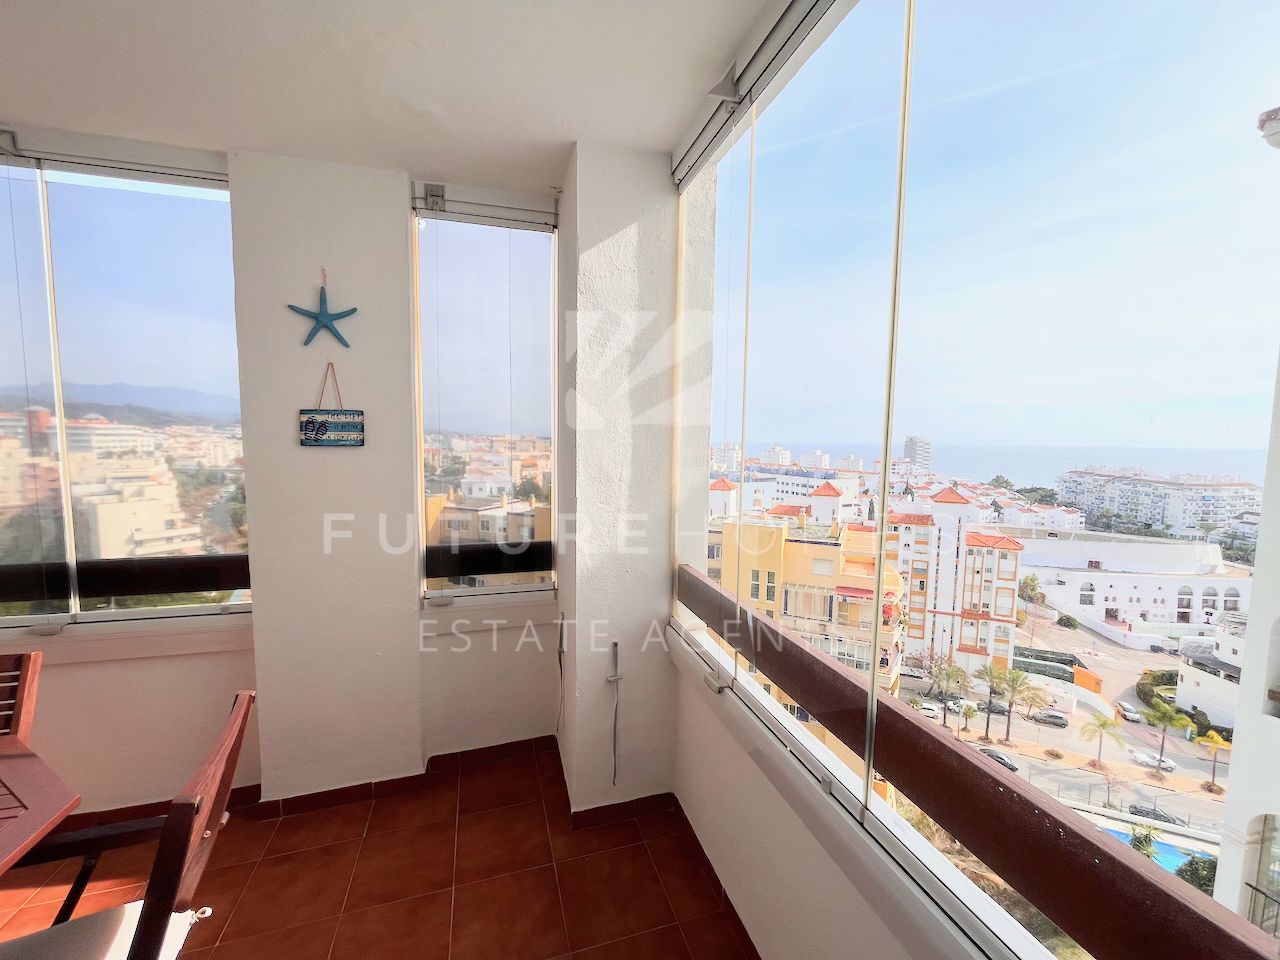 Fantástico apartamento de 2 dormitorios en el puerto de Estepona!